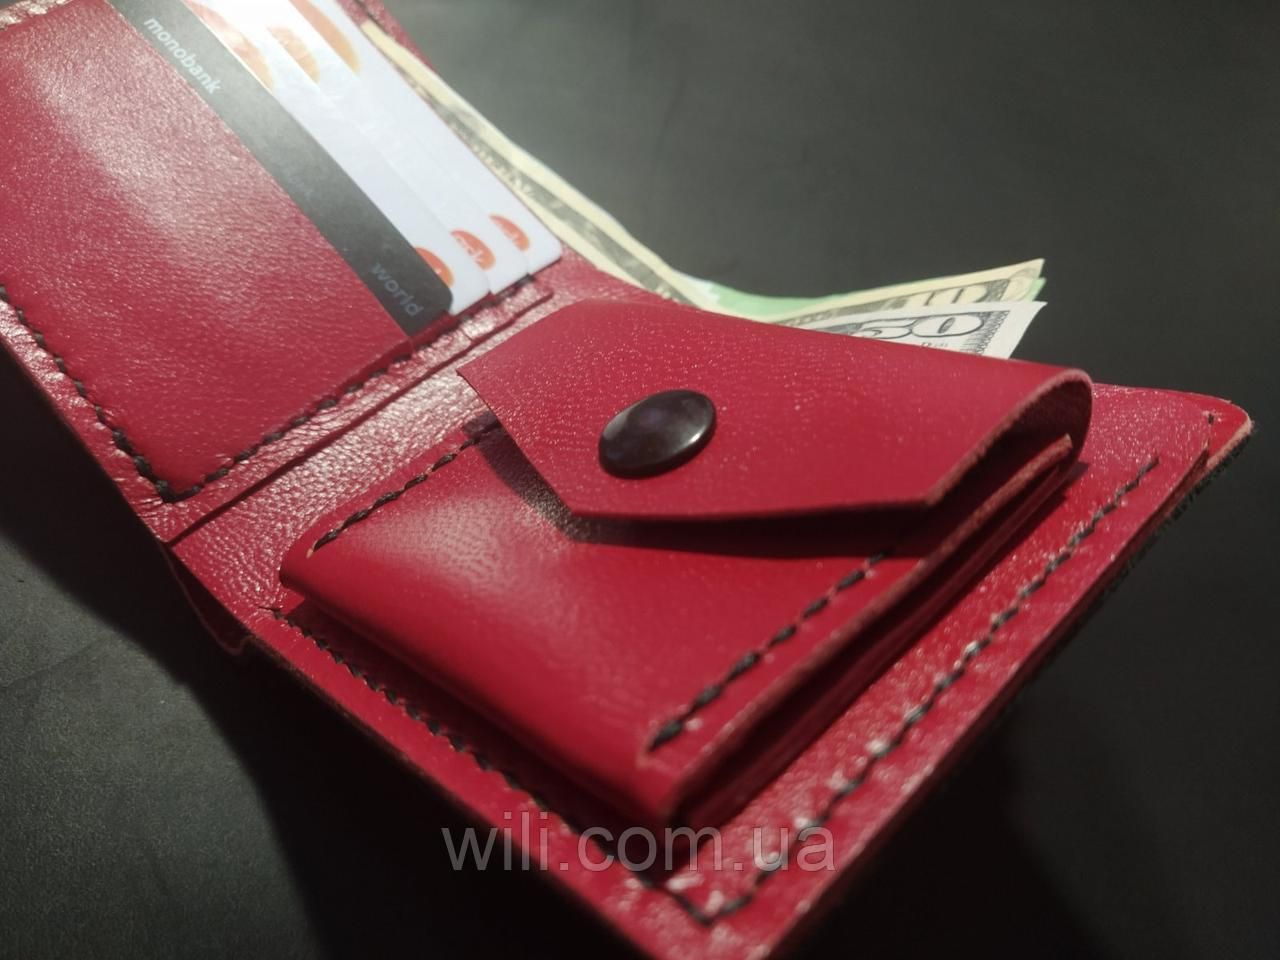 Мужской классический кошелек "Red&Black" с ручной росписью.